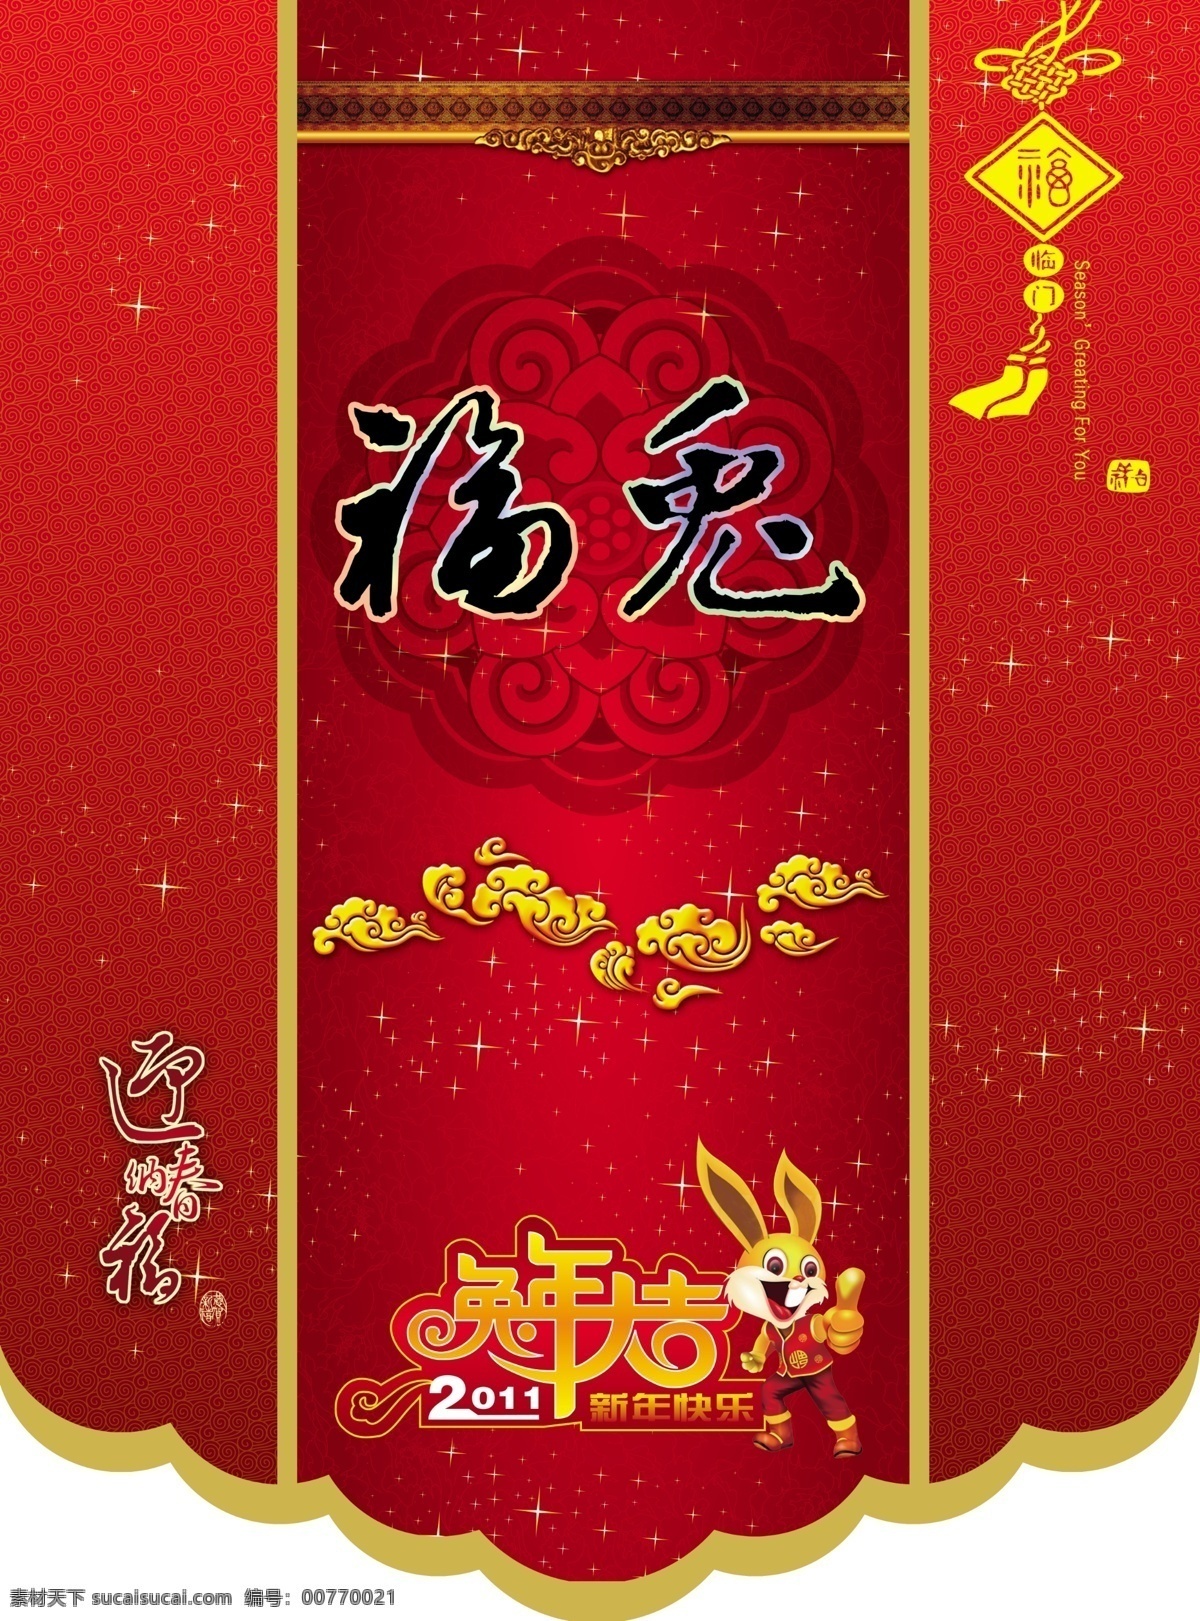 2011 年 日历 挂历 模板下载 模板 兔子 中国结 祥云 花纹 红色 节日素材 挂历模板 psd素材